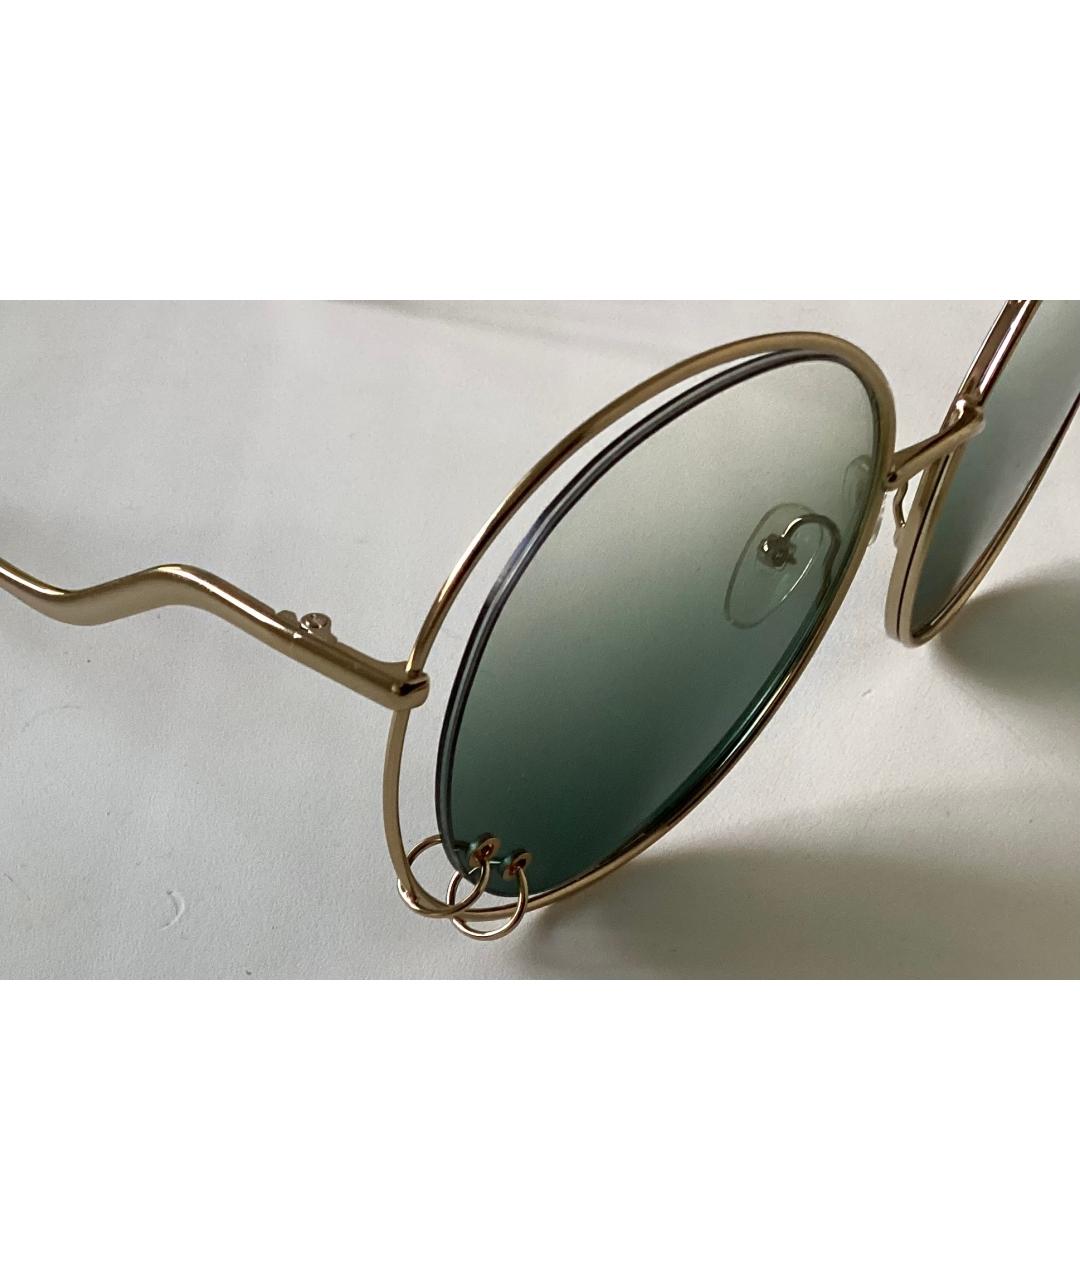 CHLOE Золотые металлические солнцезащитные очки, фото 3